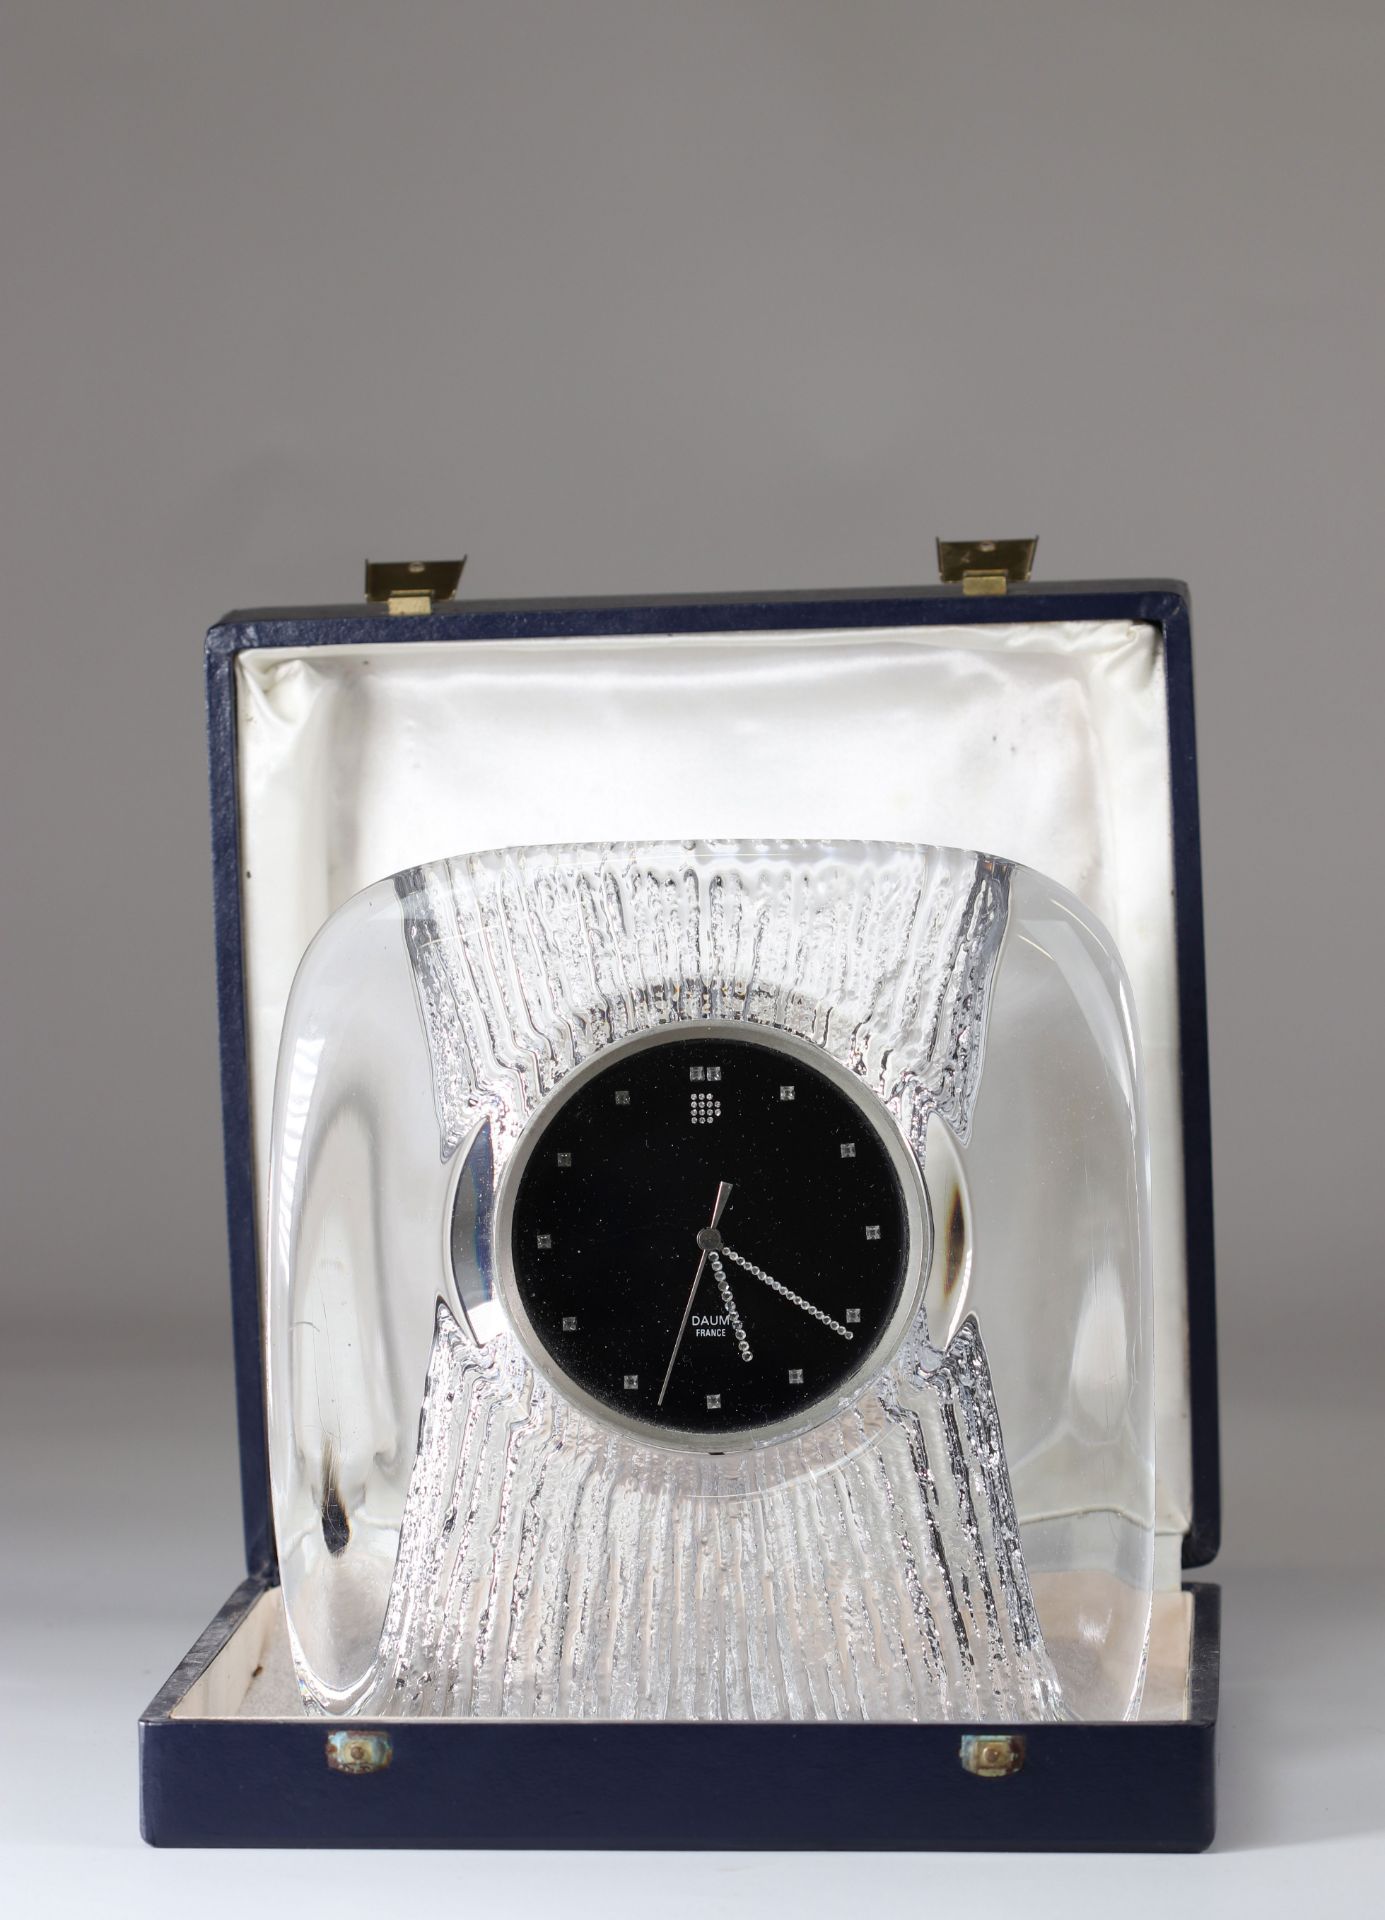 Daum Nancy clock in its box - Image 2 of 2